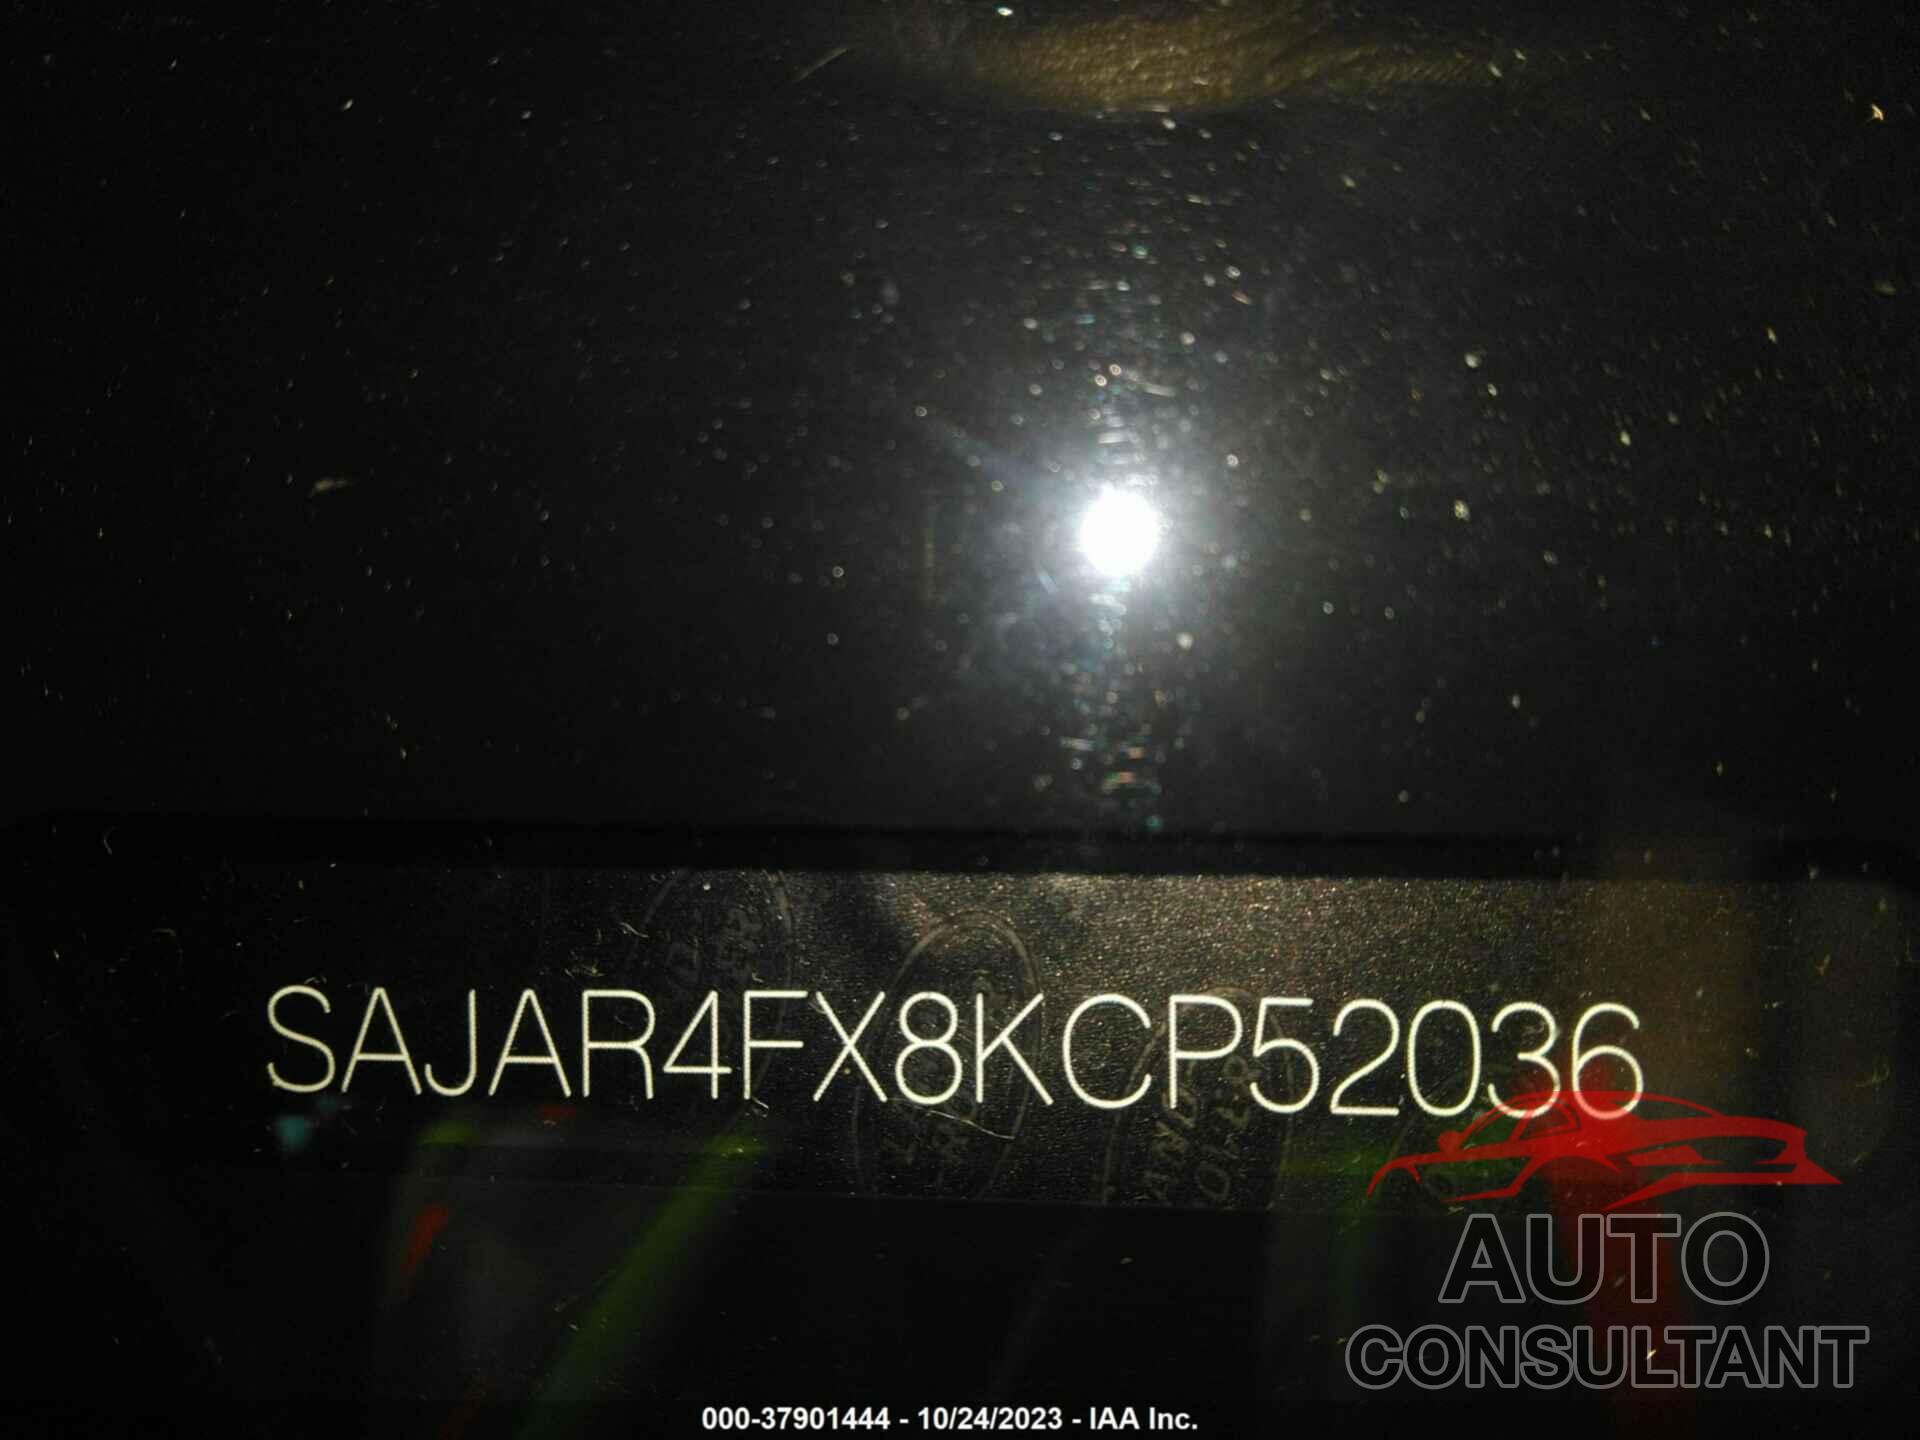 JAGUAR XE 2019 - SAJAR4FX8KCP52036